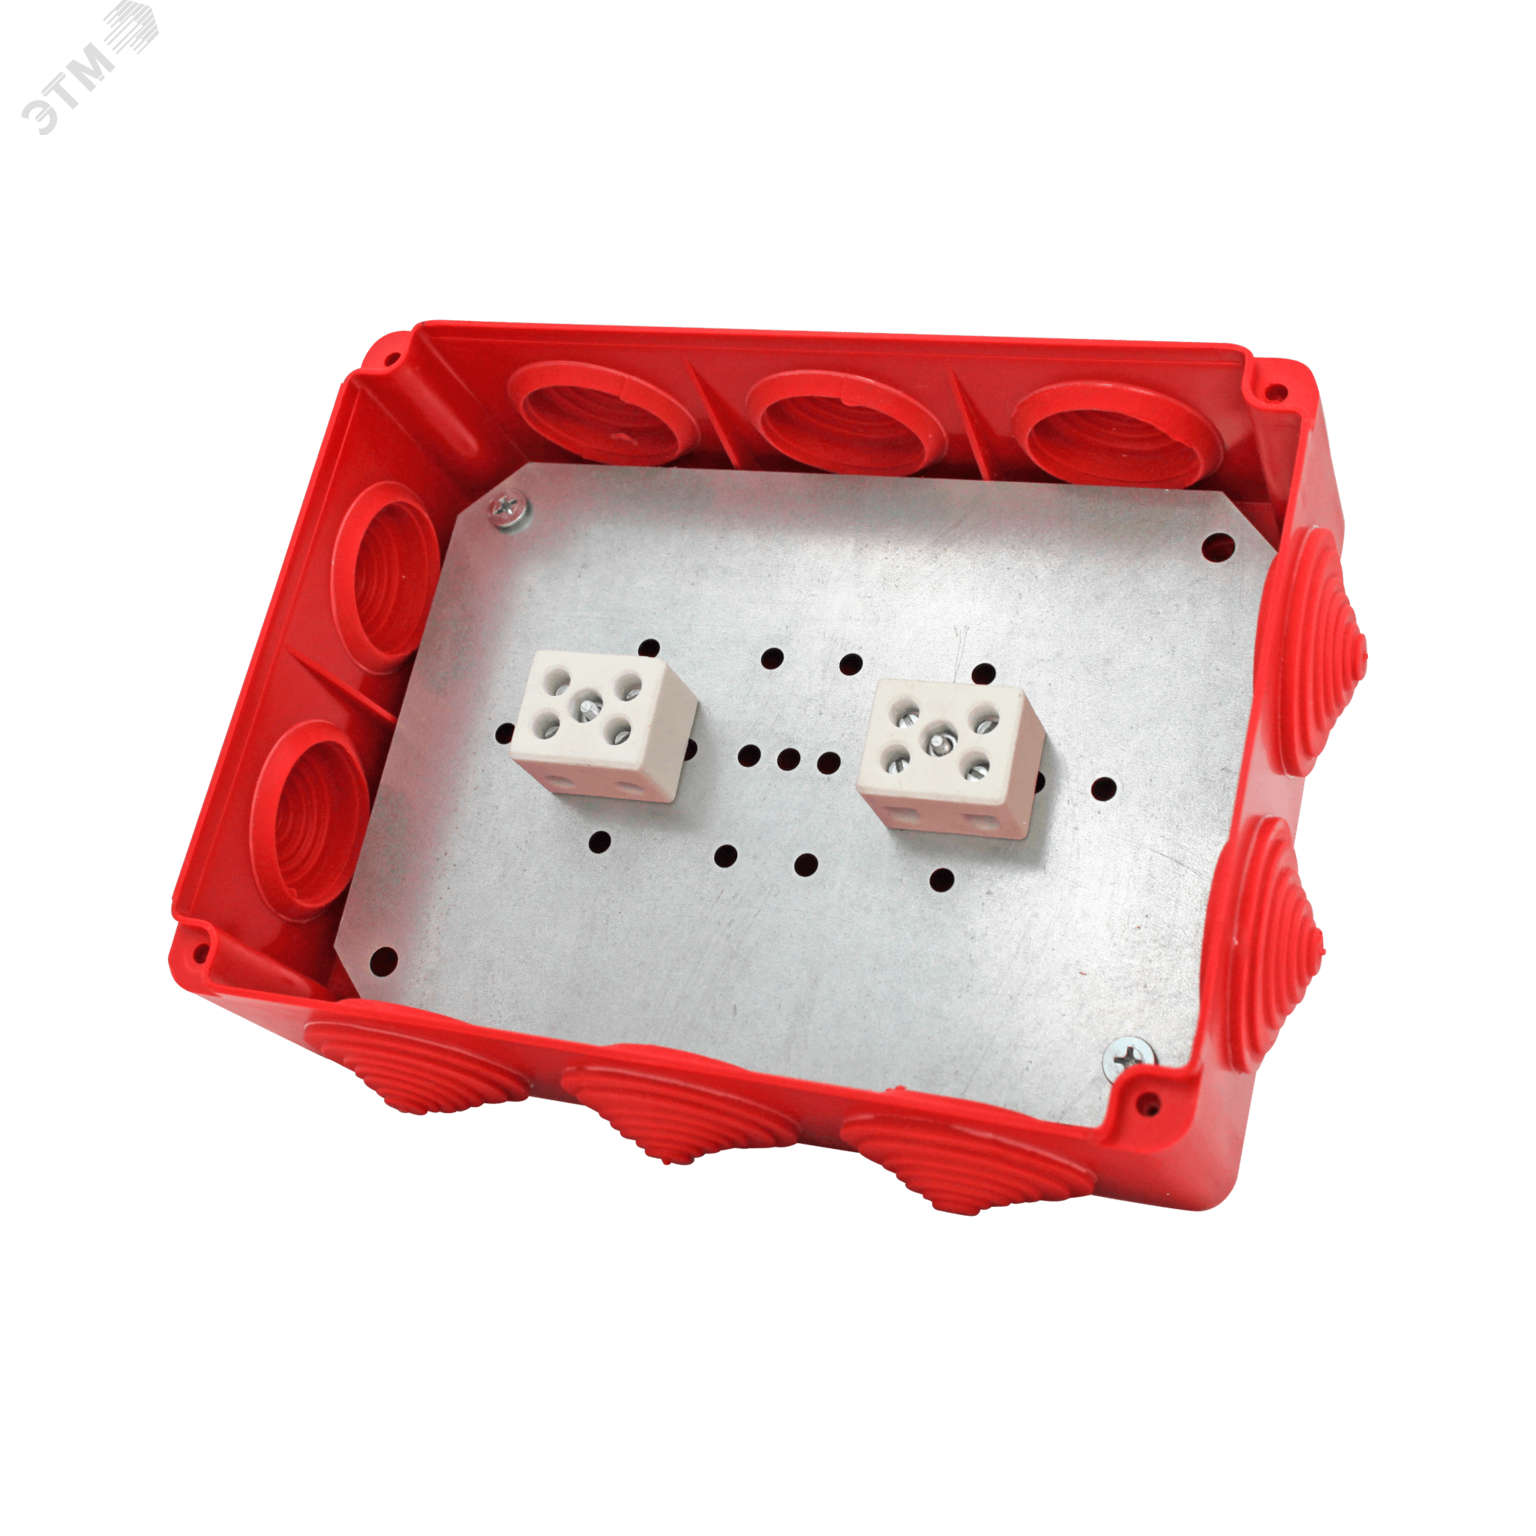 Коробка распределительная огнестойкая КРОПС-П4, IP54, габаритные размеры 150х110х70 мм, для кабелей сечением до 16 мм2, 6 клемм KR0058 КМ-Профиль - превью 3